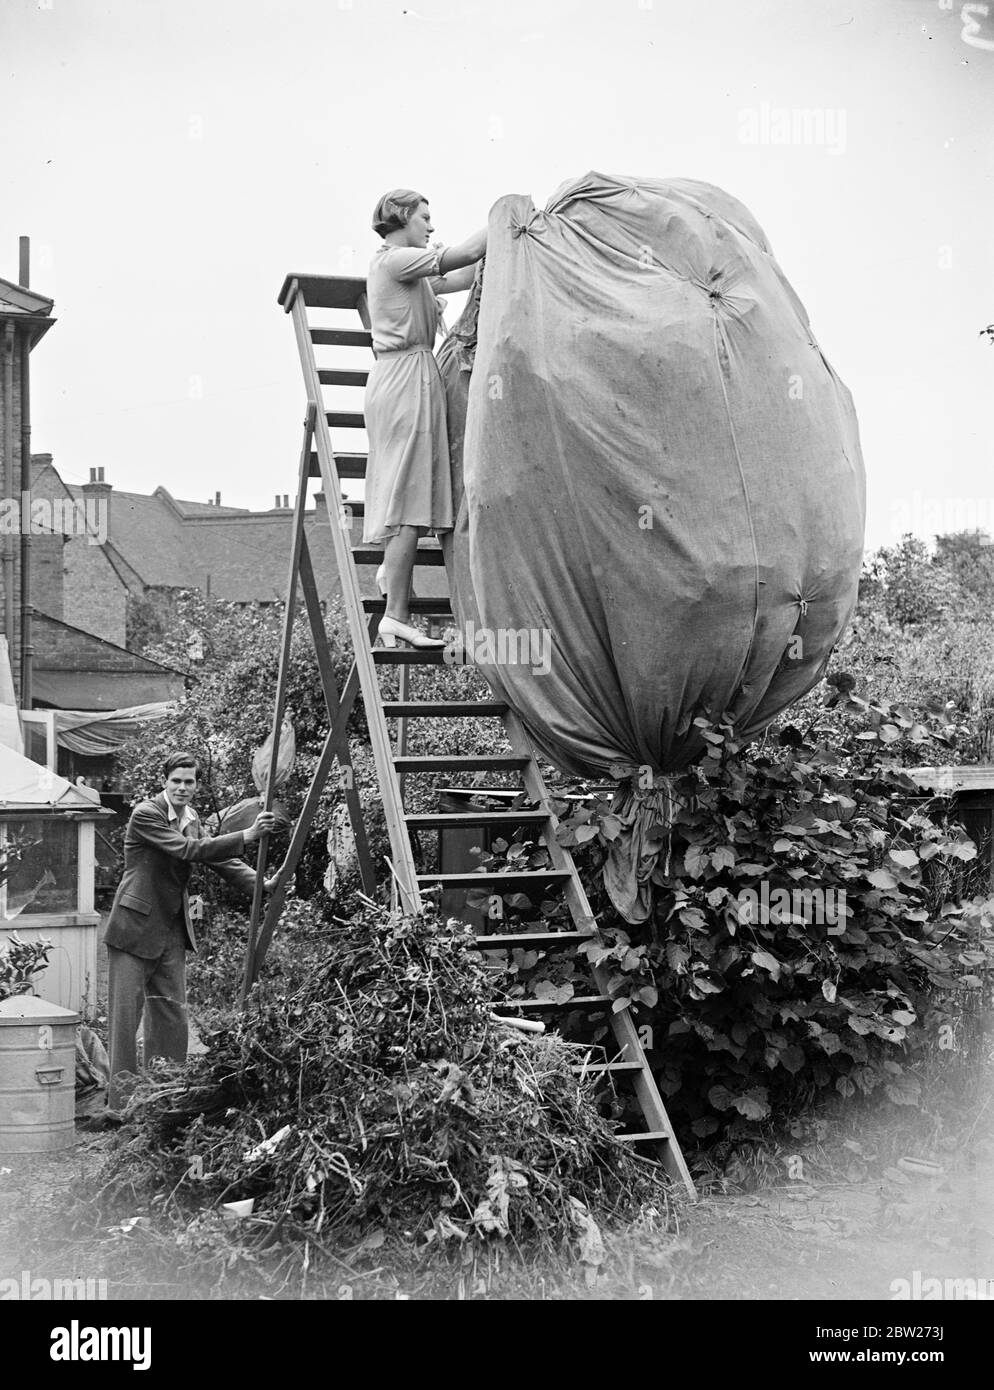 Eine Schmetterlingsfarm in Bexley. Eine Frau fängt Schmetterlinge mit einem riesigen Netz auf einer Leiter. 1933 Stockfoto